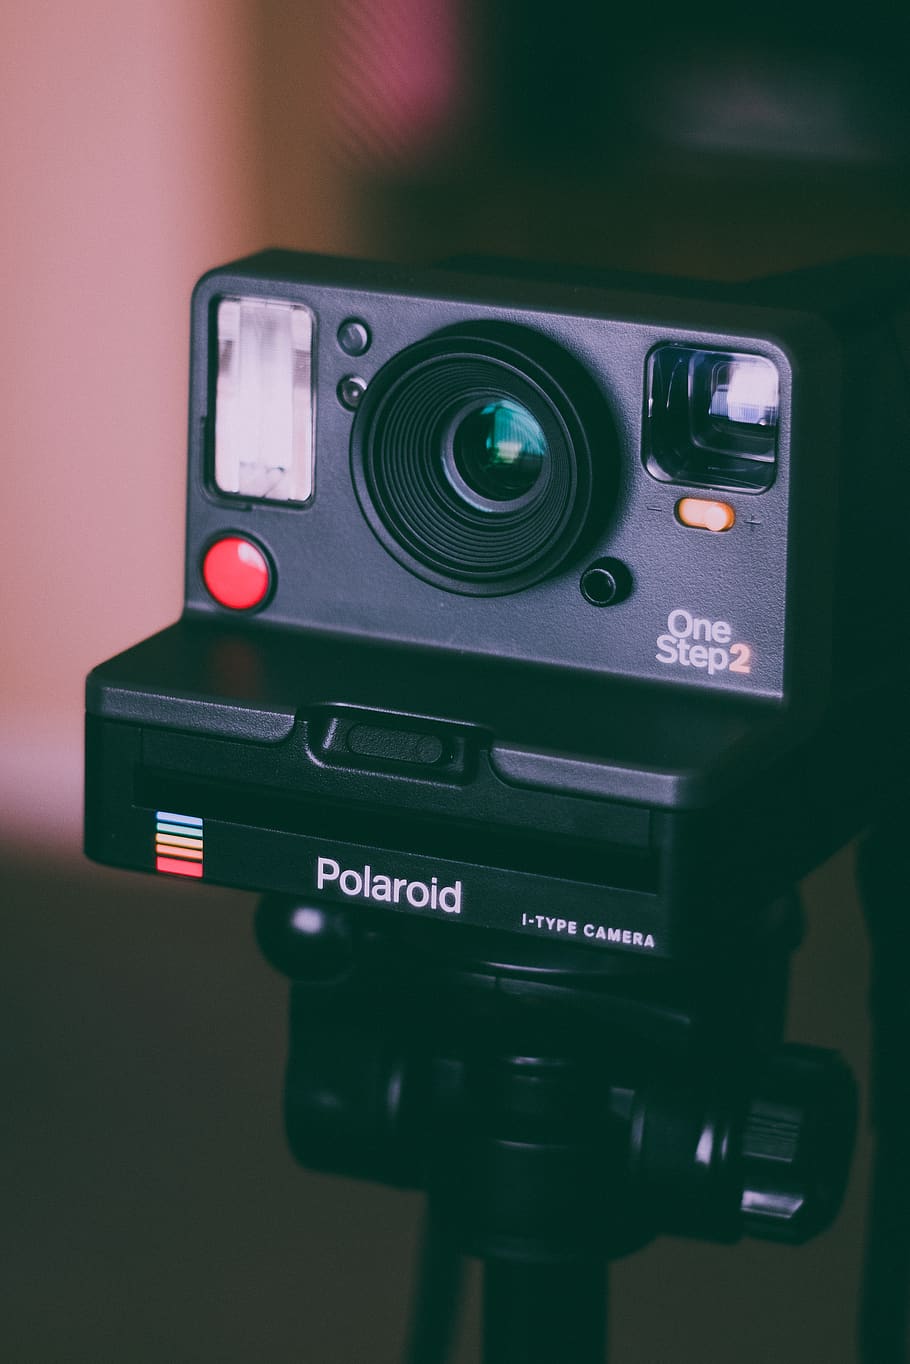 Black Polaroid Camera, analog camera, instant camera, retro, technology